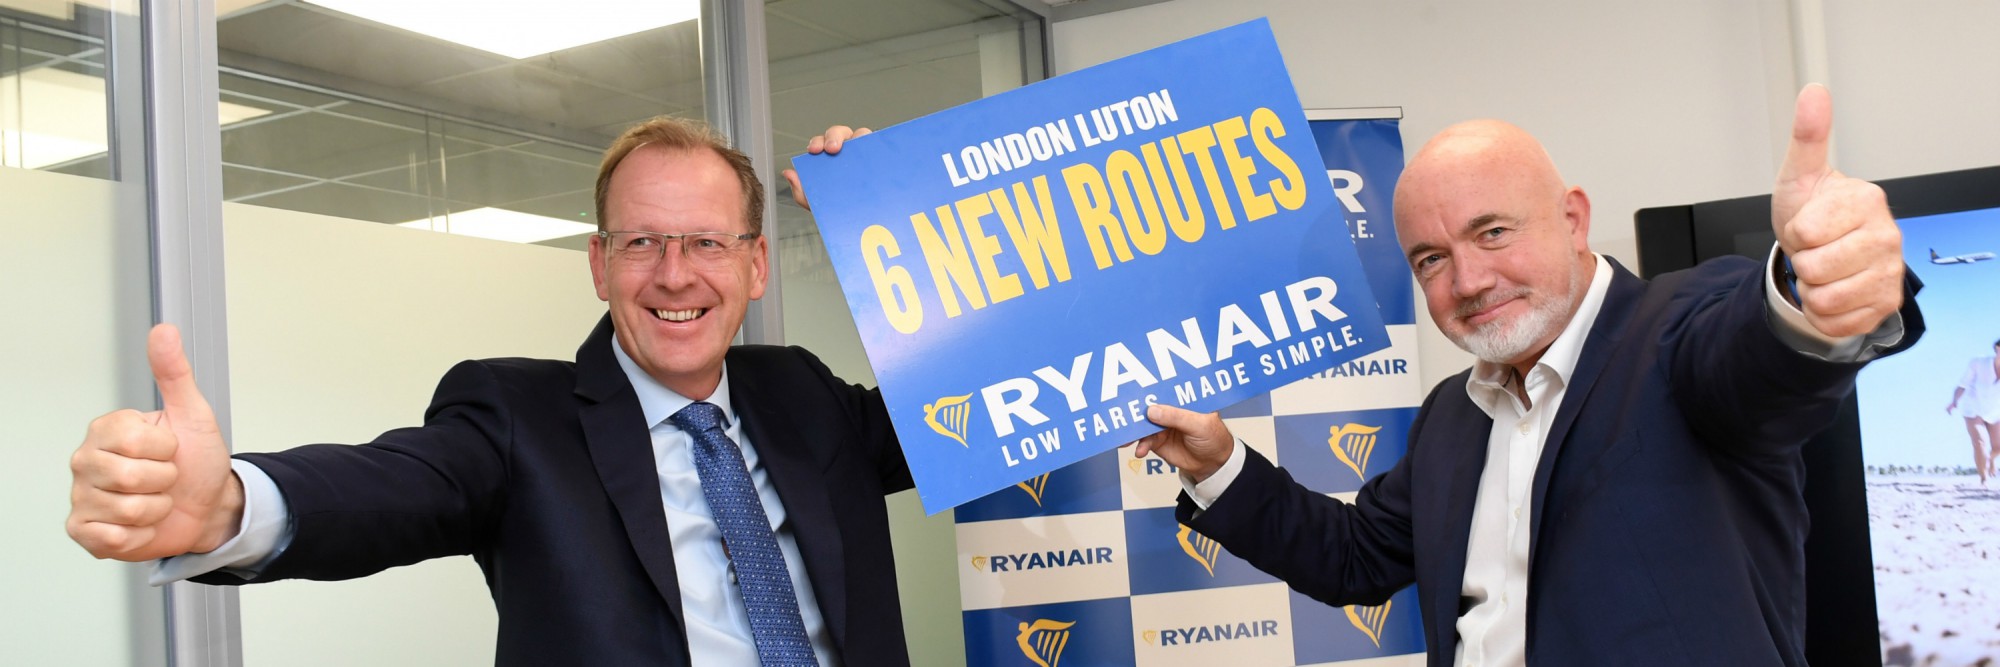 Η Ryanair Ανακοινωνει Νεο Δρομολογιο Απο Την Αθηνα Προς Το Λονδινο Λουτον